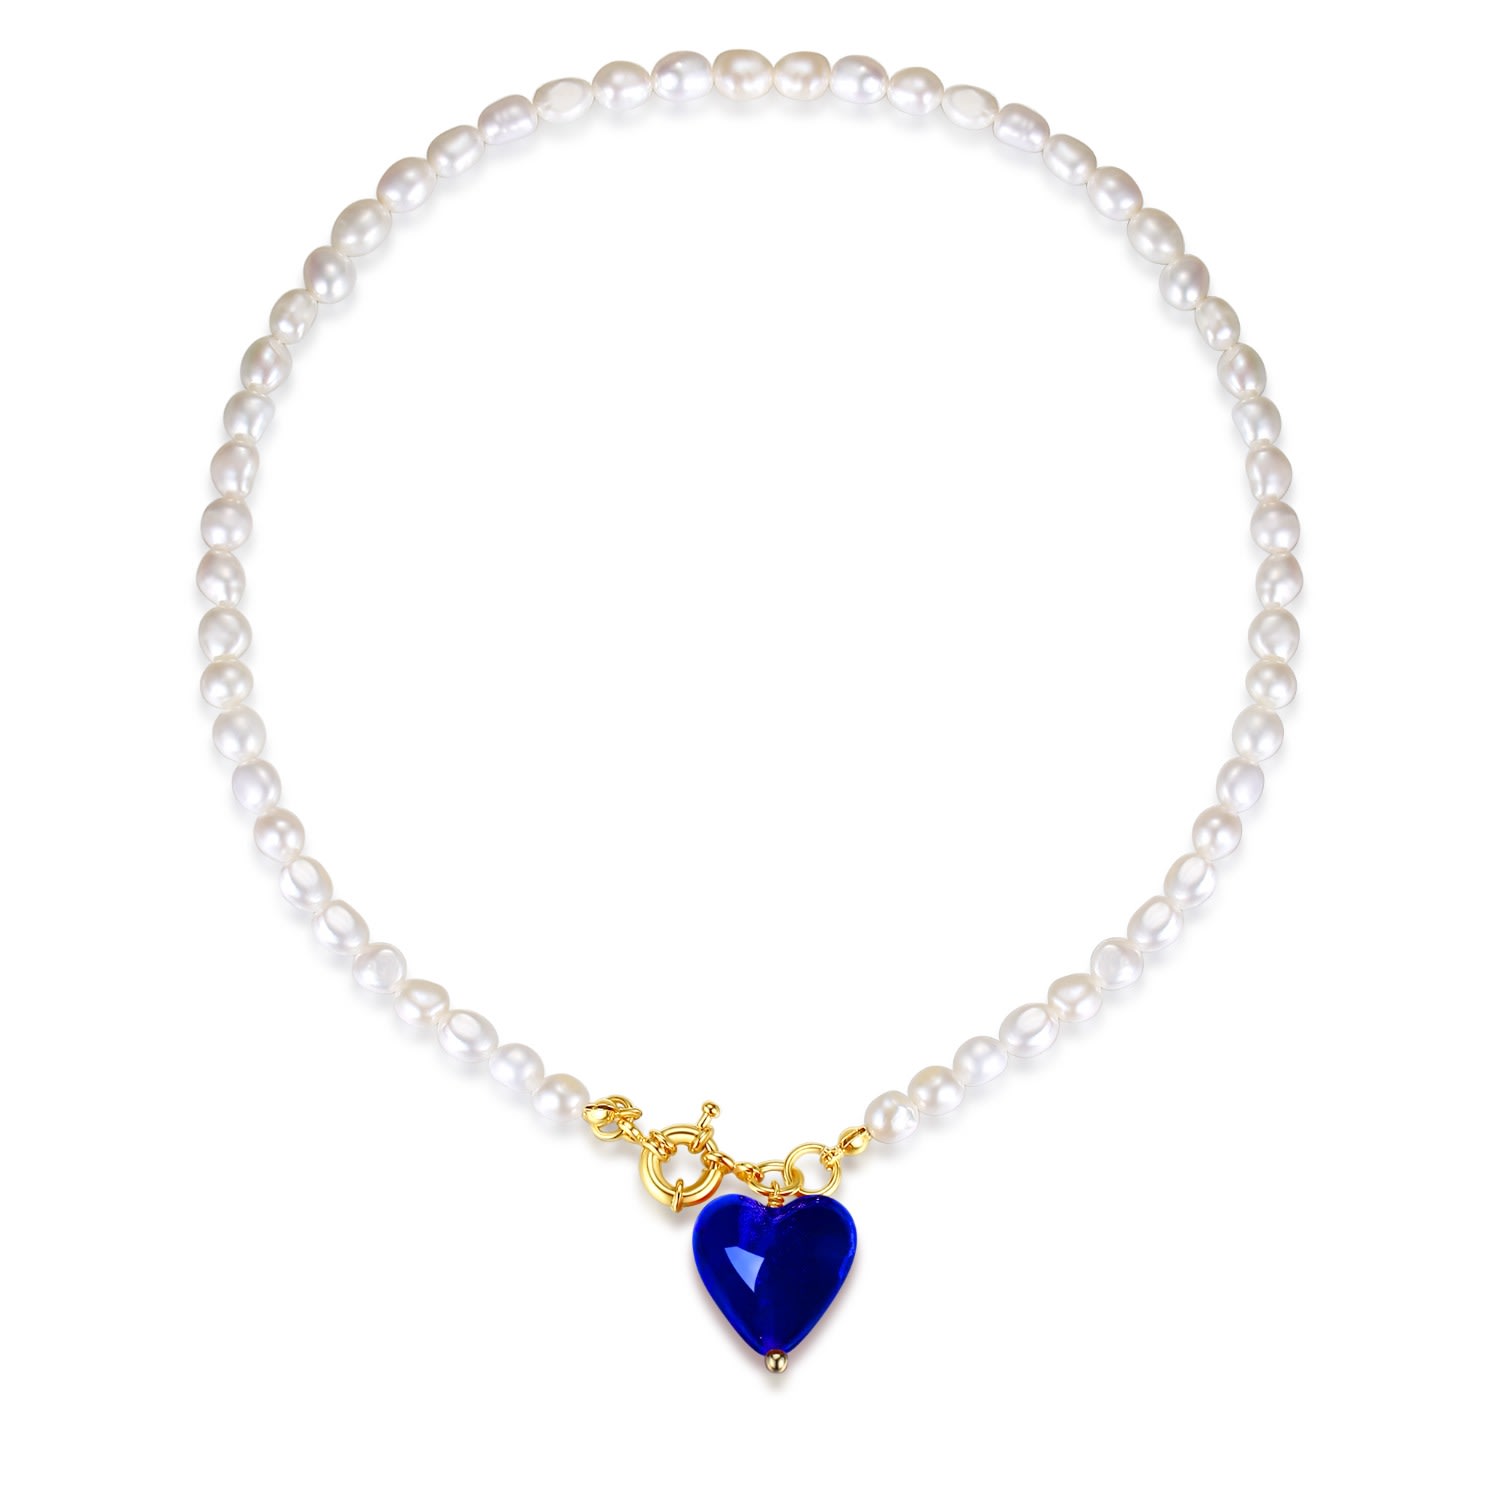 Shop Classicharms Women's Esmée Blue Glaze Heart Pendant Pearl Necklace